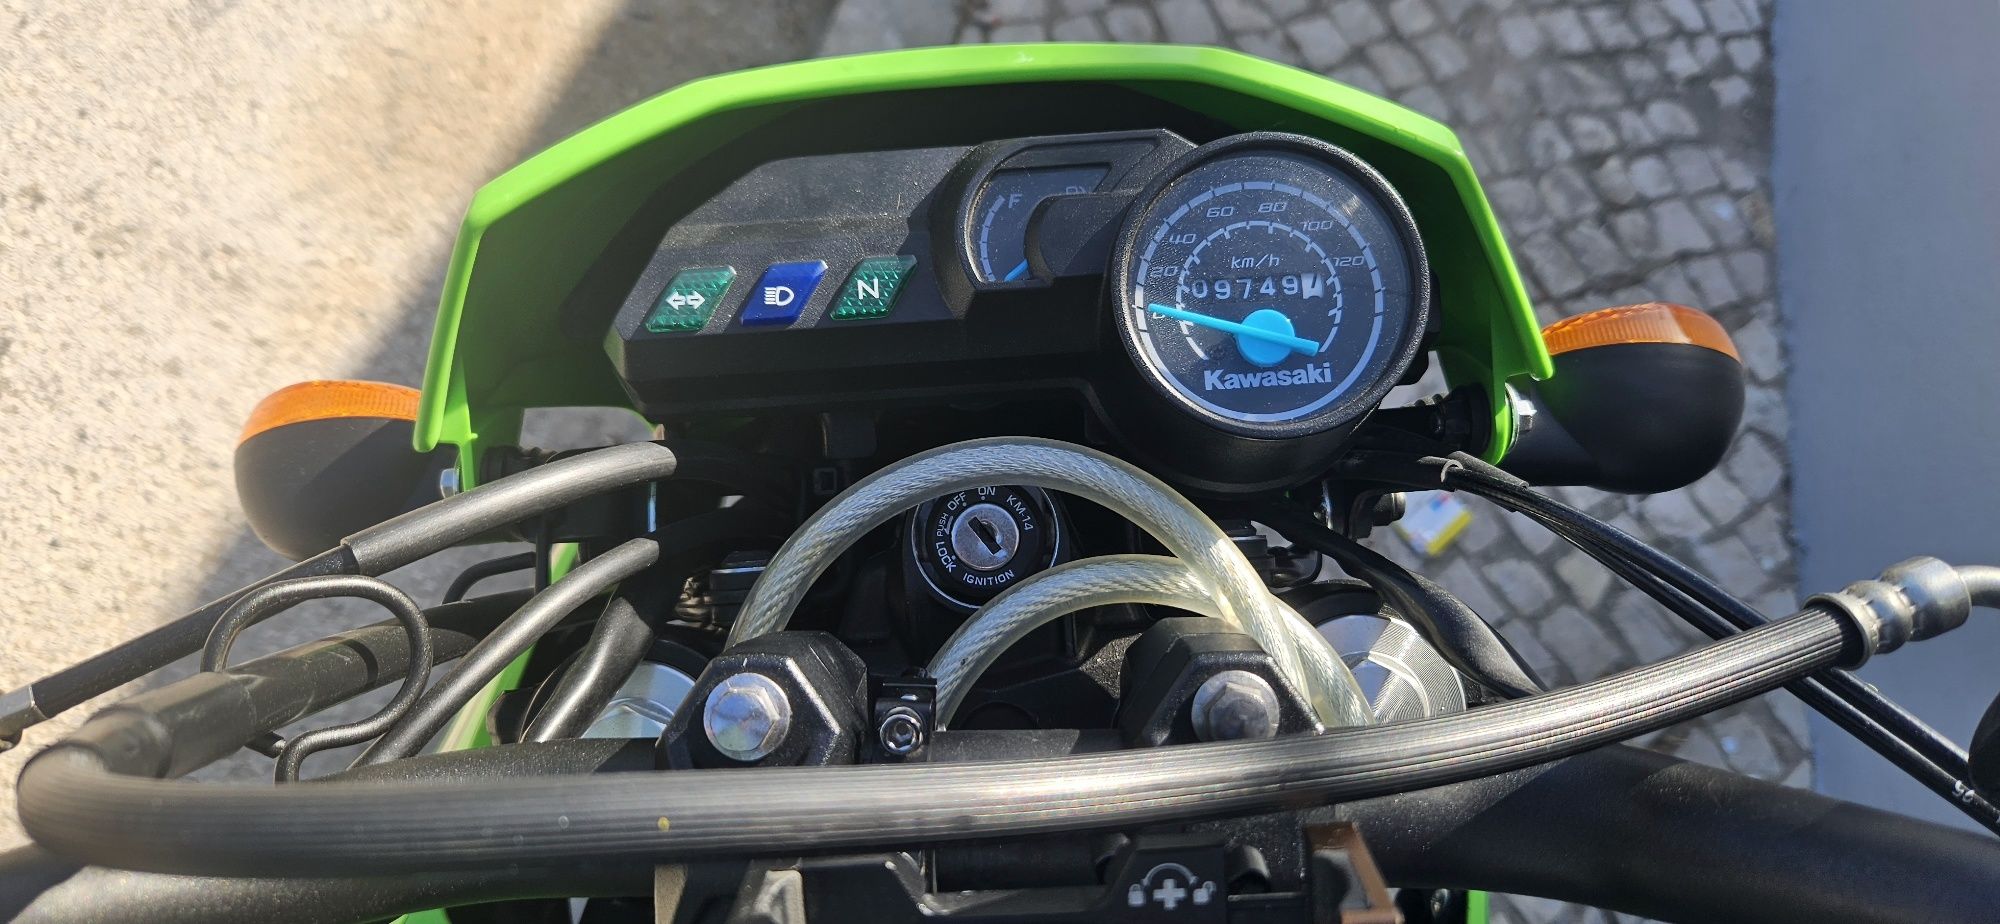 Kawasaki D-tracker 150cc Supermotard 2018